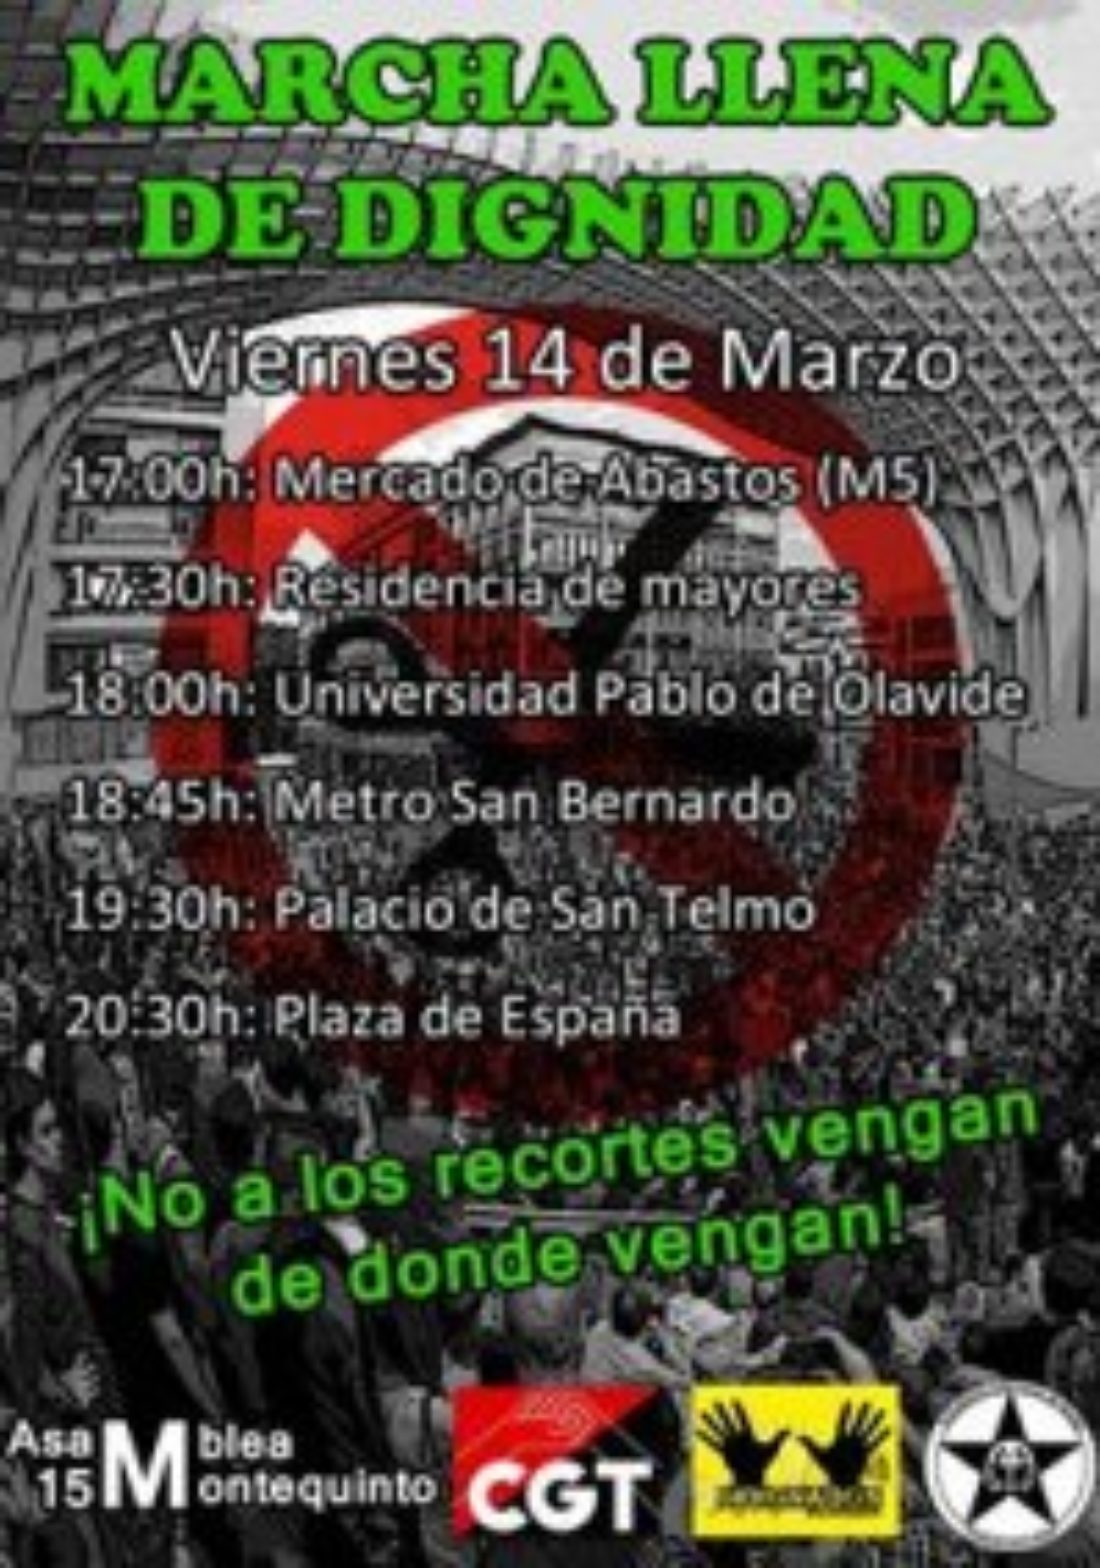 El 14 de marzo empieza la Marcha llena de Dignidad en Sevilla